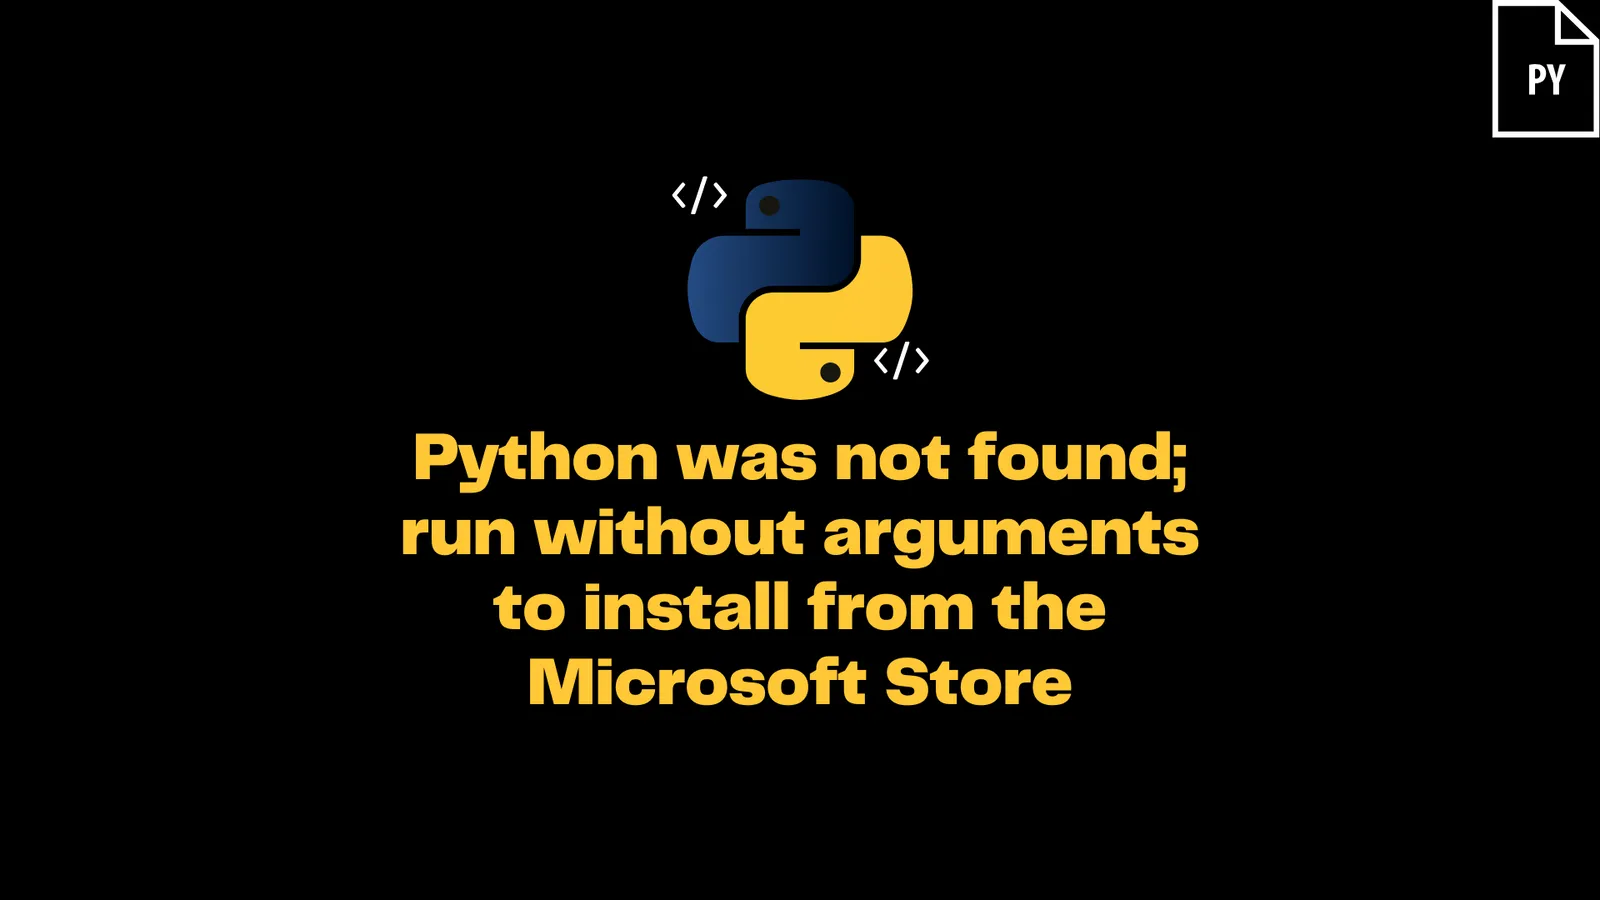 "Python